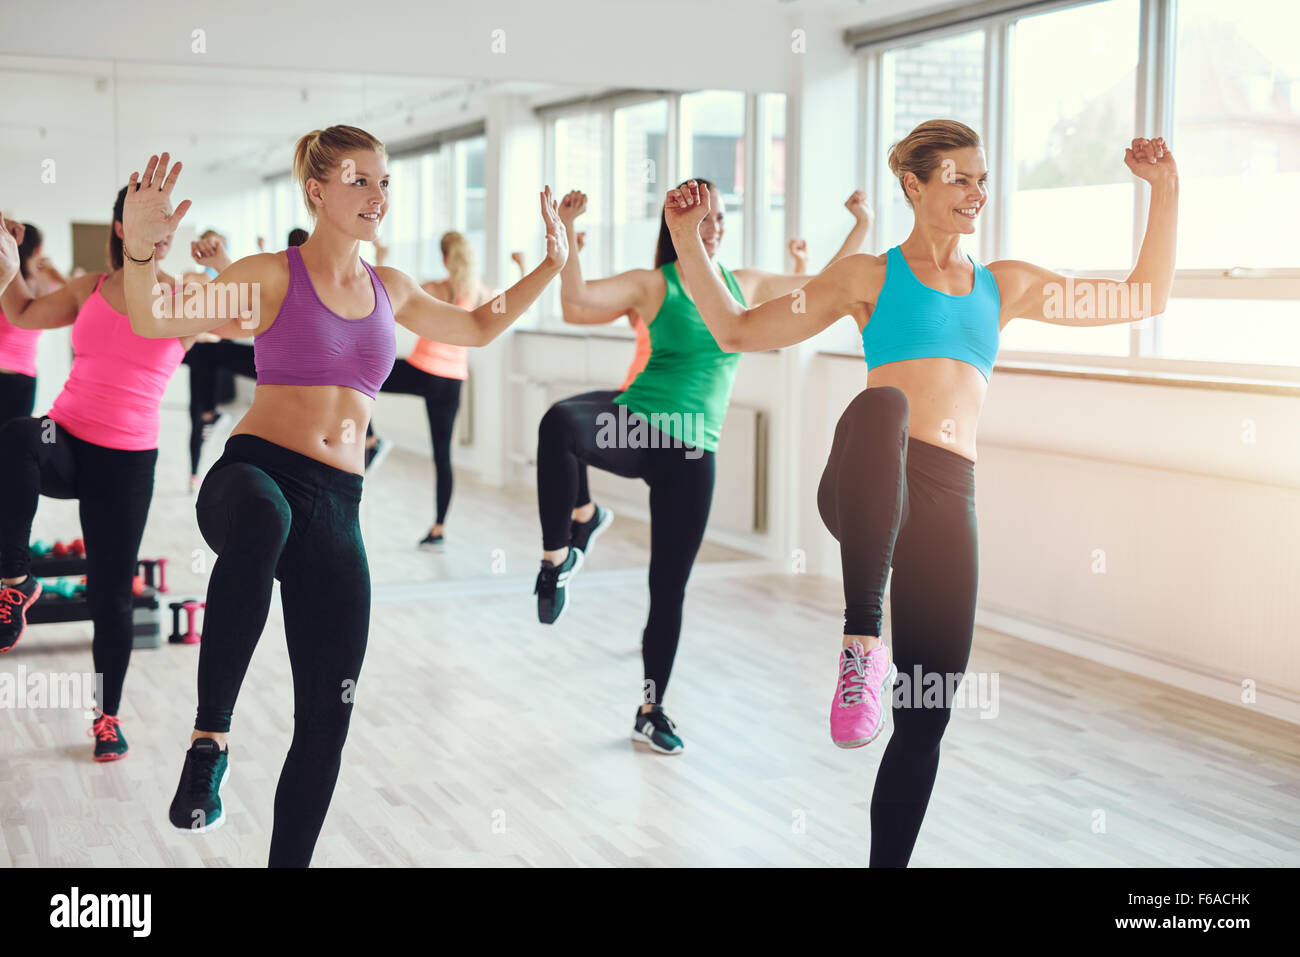 Gimnasio, el deporte, la formación, el gimnasio y el concepto de estilo de vida - grupo de gente sonriente el ejercicio en el gimnasio. Foto de stock